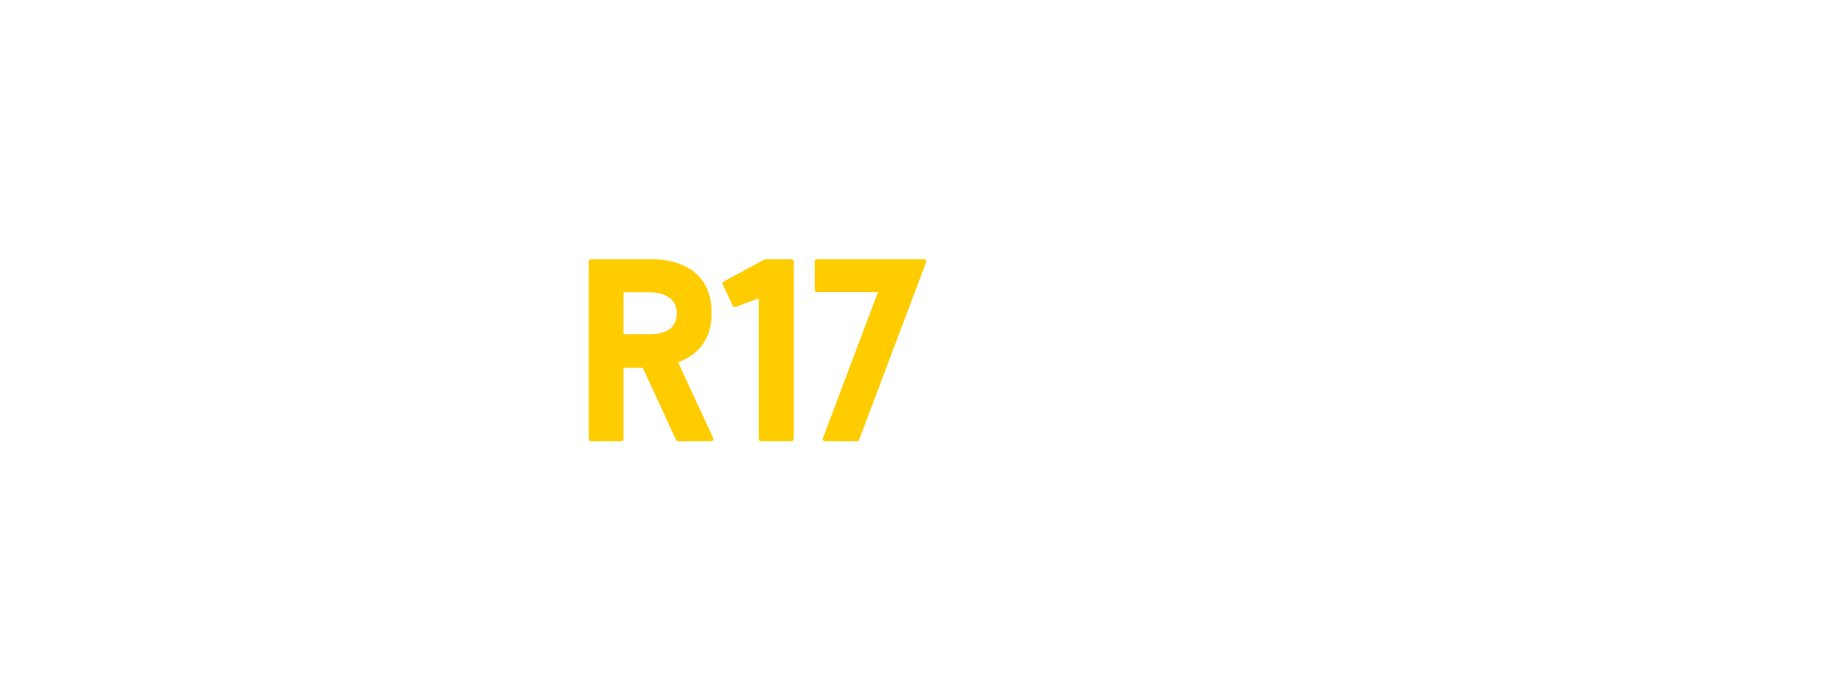 R17design